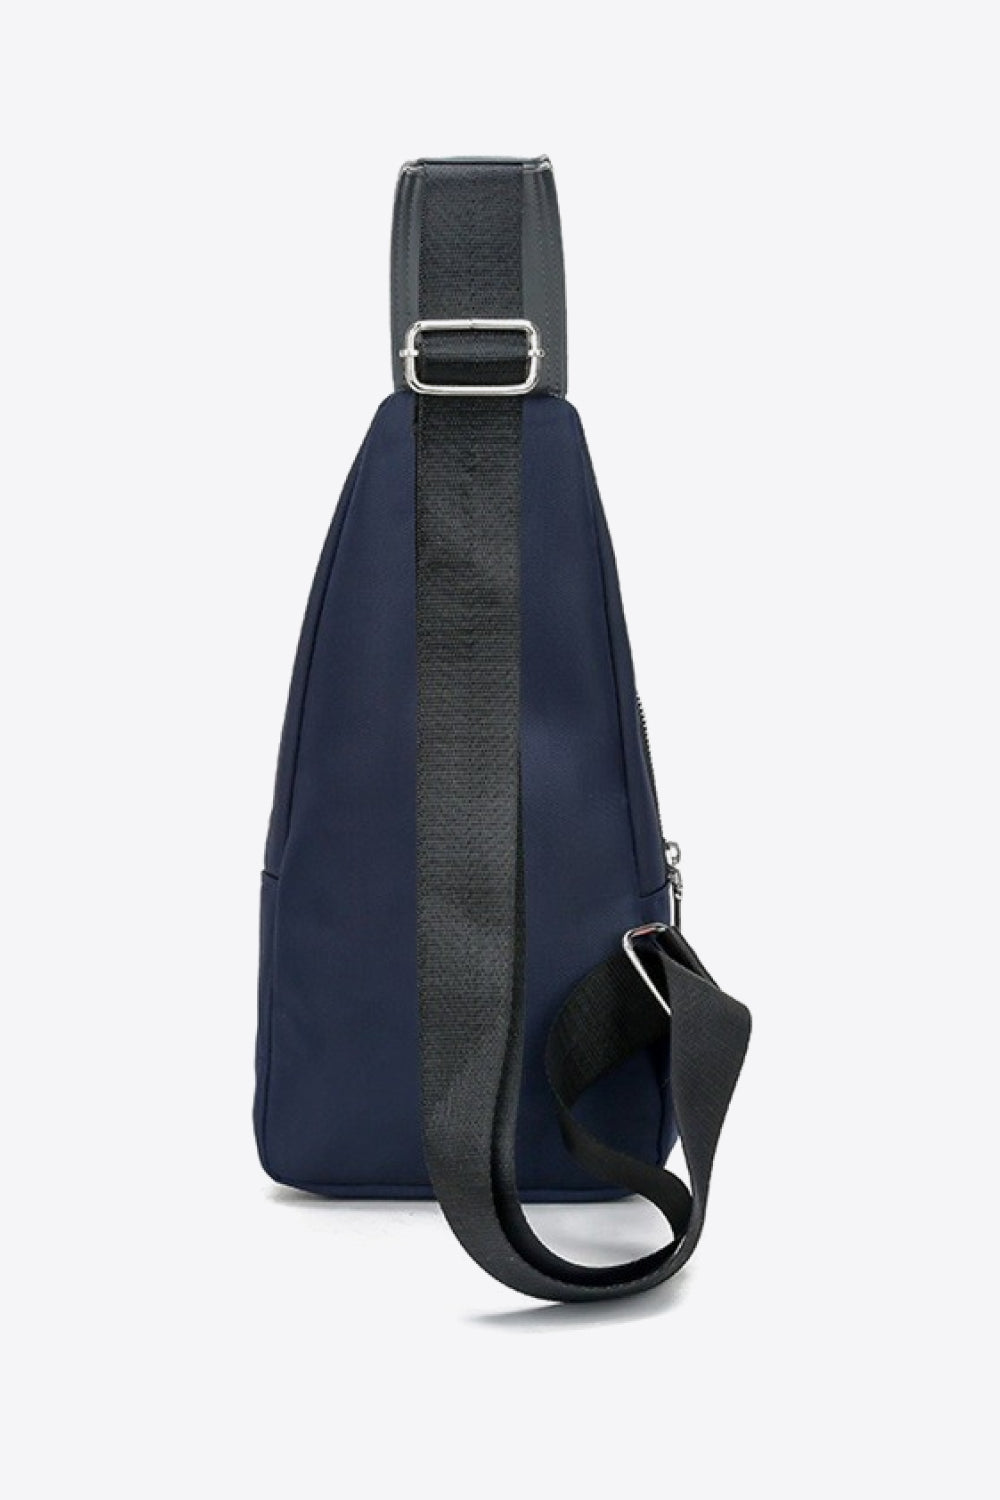 PU Leather Waterproof Sling Bag